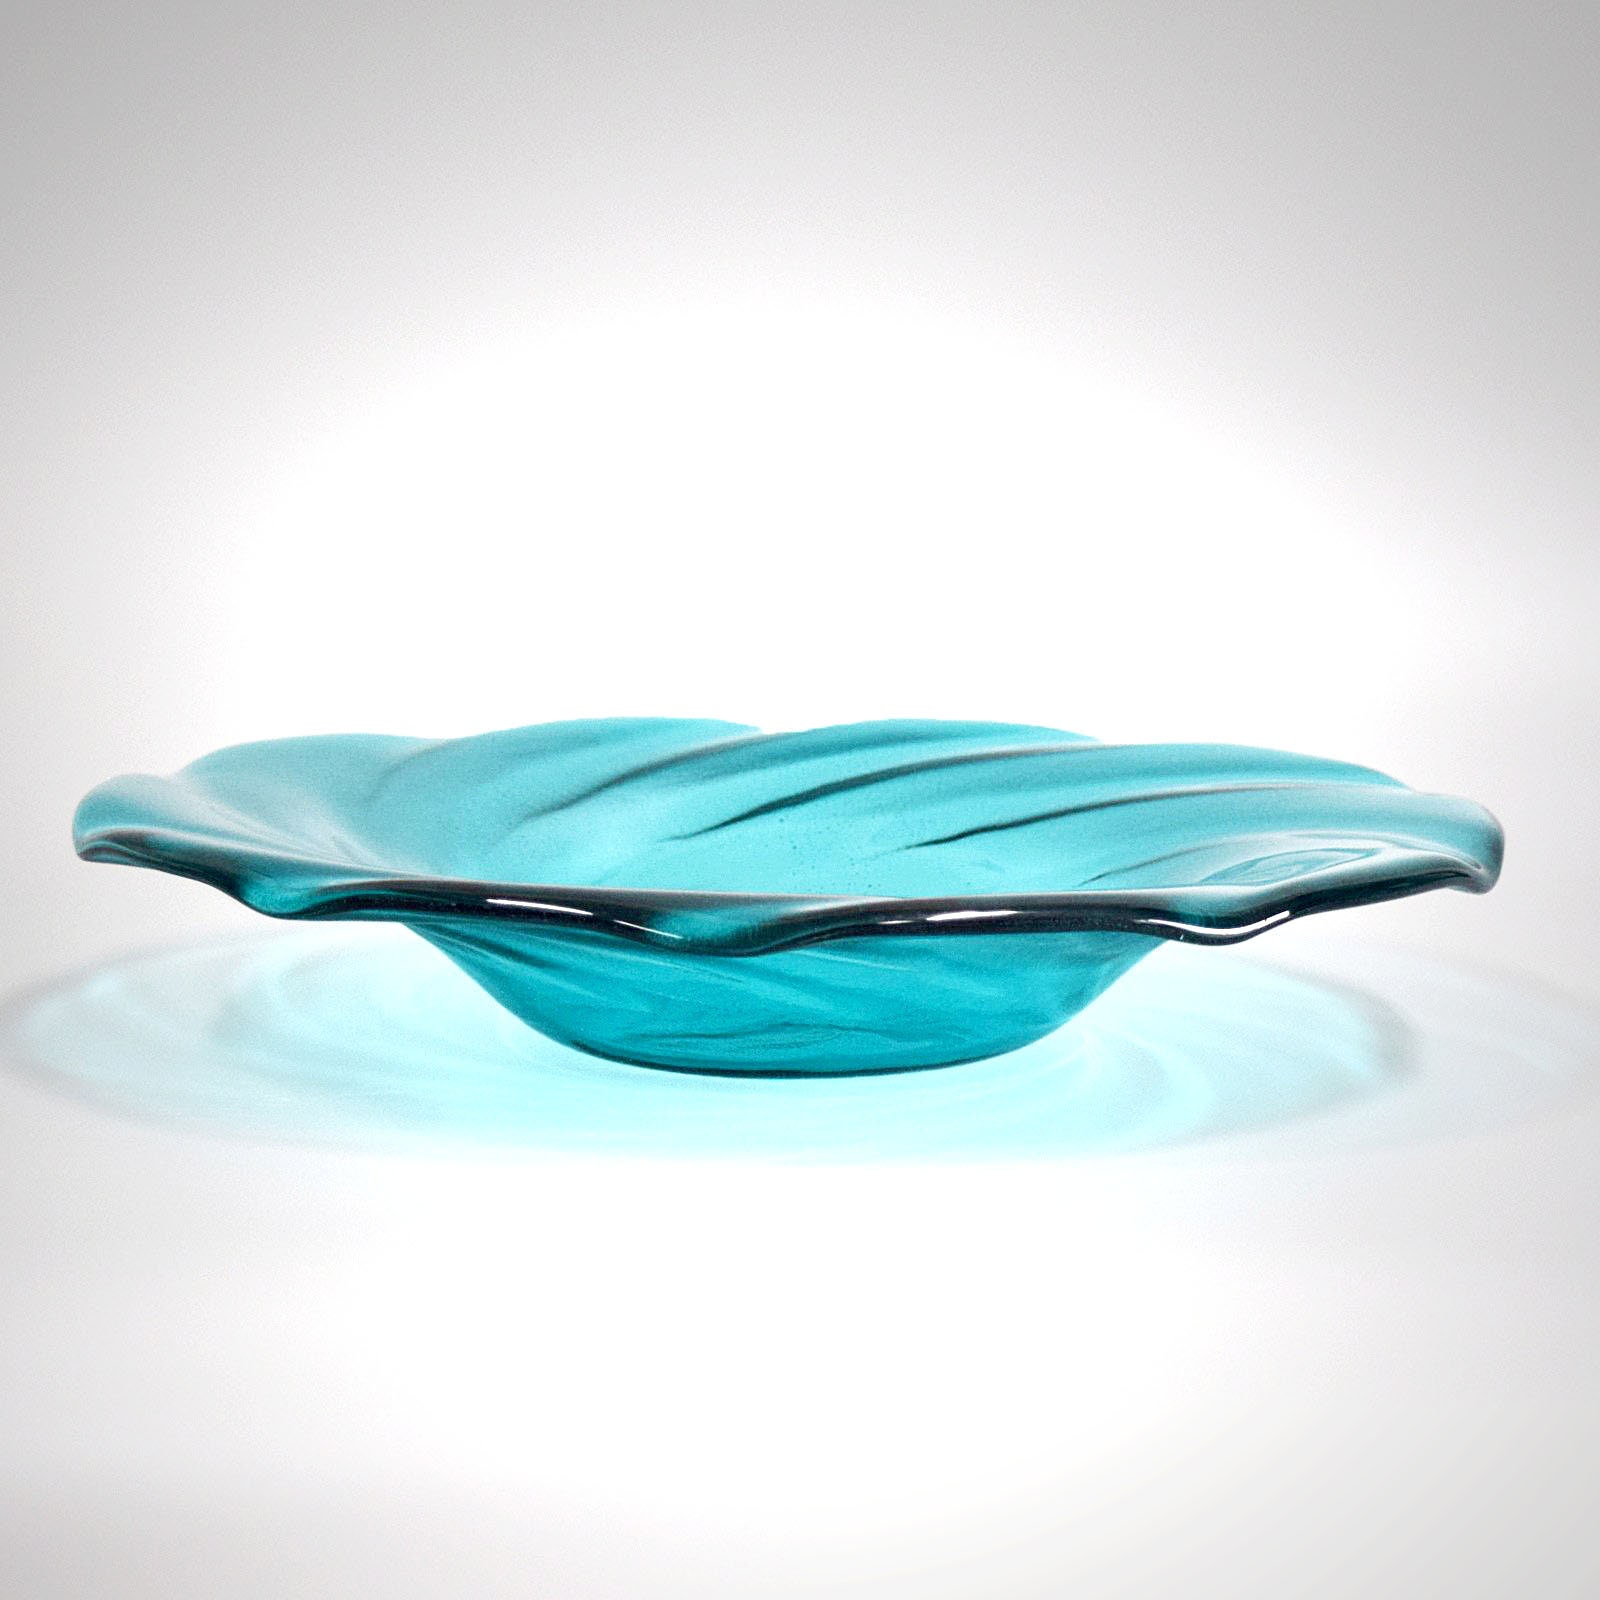 Glass Art Fruit Bowl Centerpiece Teal Aqua Green Modern Art | Etsy